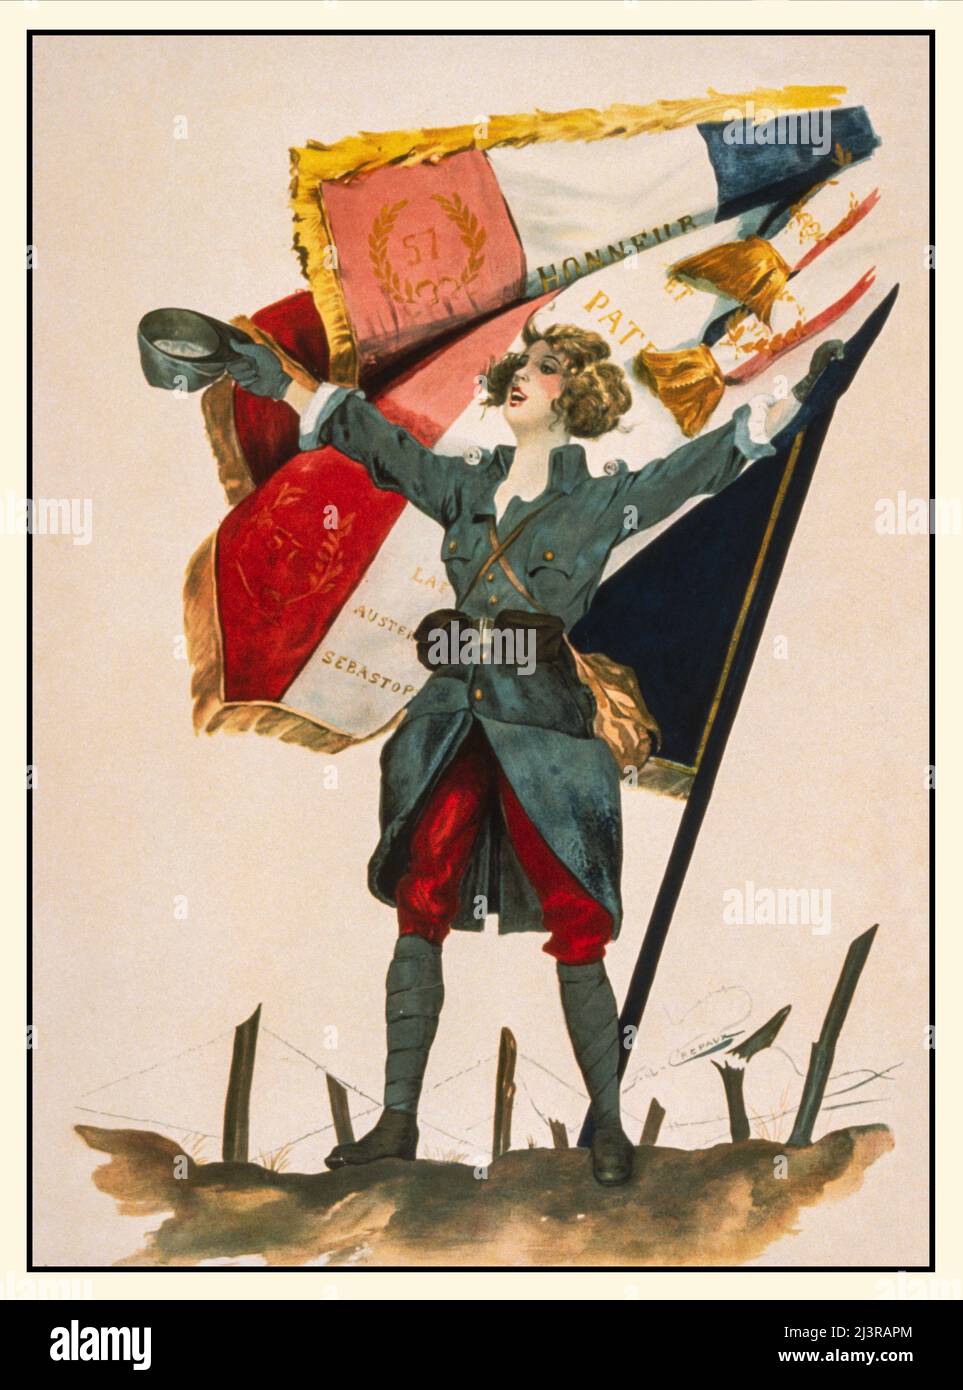 Une affiche publicitaire française du début du 20th siècle datant de la première Guerre mondiale, 1914-1918, montrant une femme (symbole de la France) vêtue d'un uniforme militaire français portant le drapeau français. L'artiste est F A Crepaux. Banque D'Images